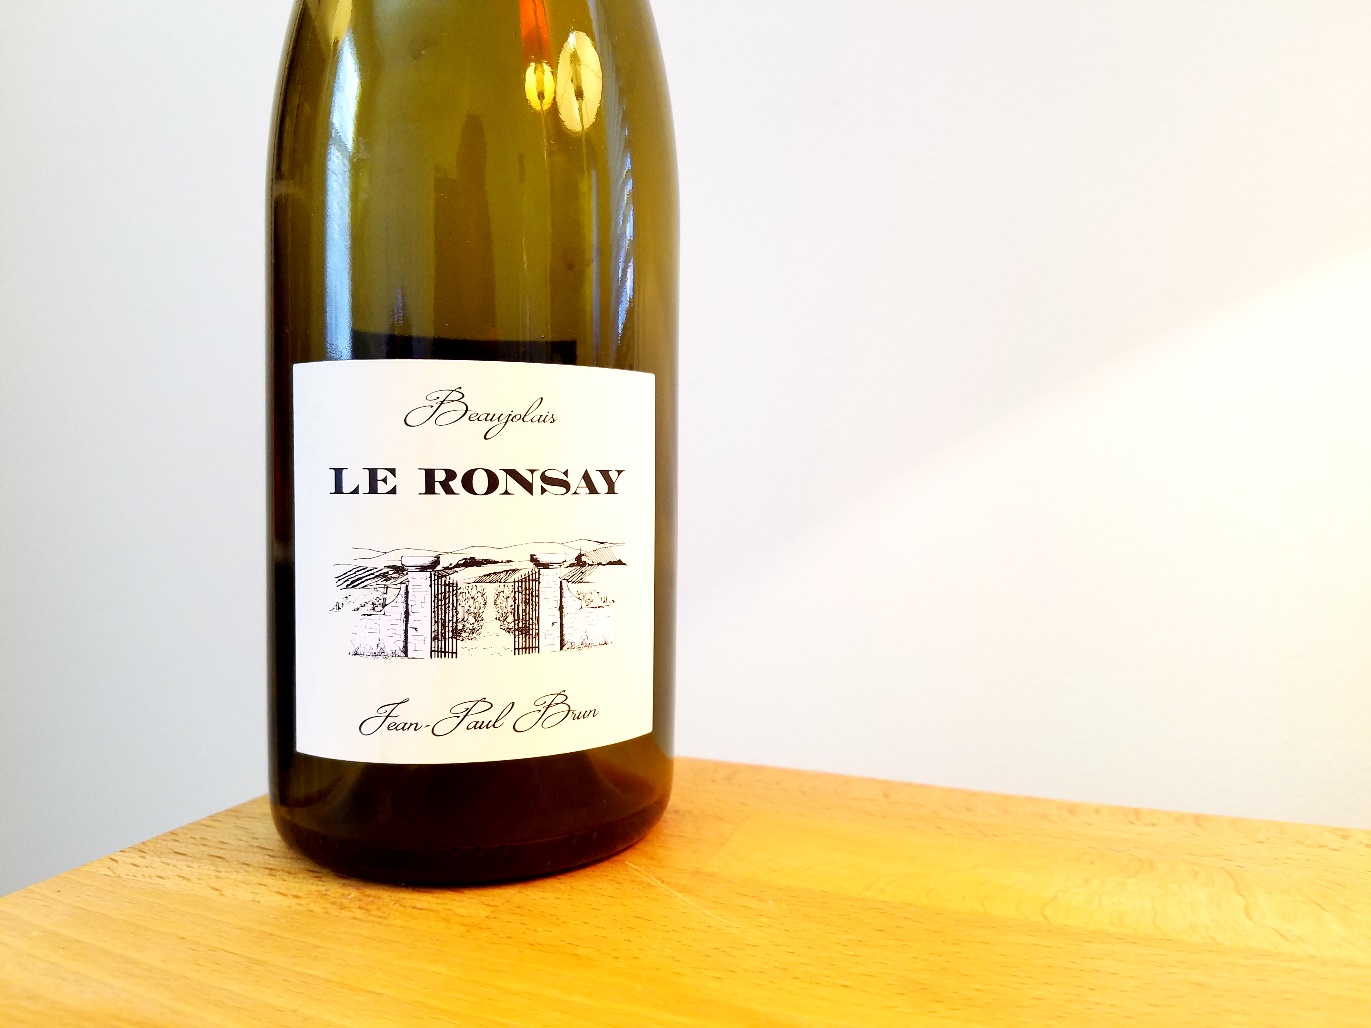 Jean-Paul Brun, Le Ronsay Beaujolais 2019, France, Wine Casual